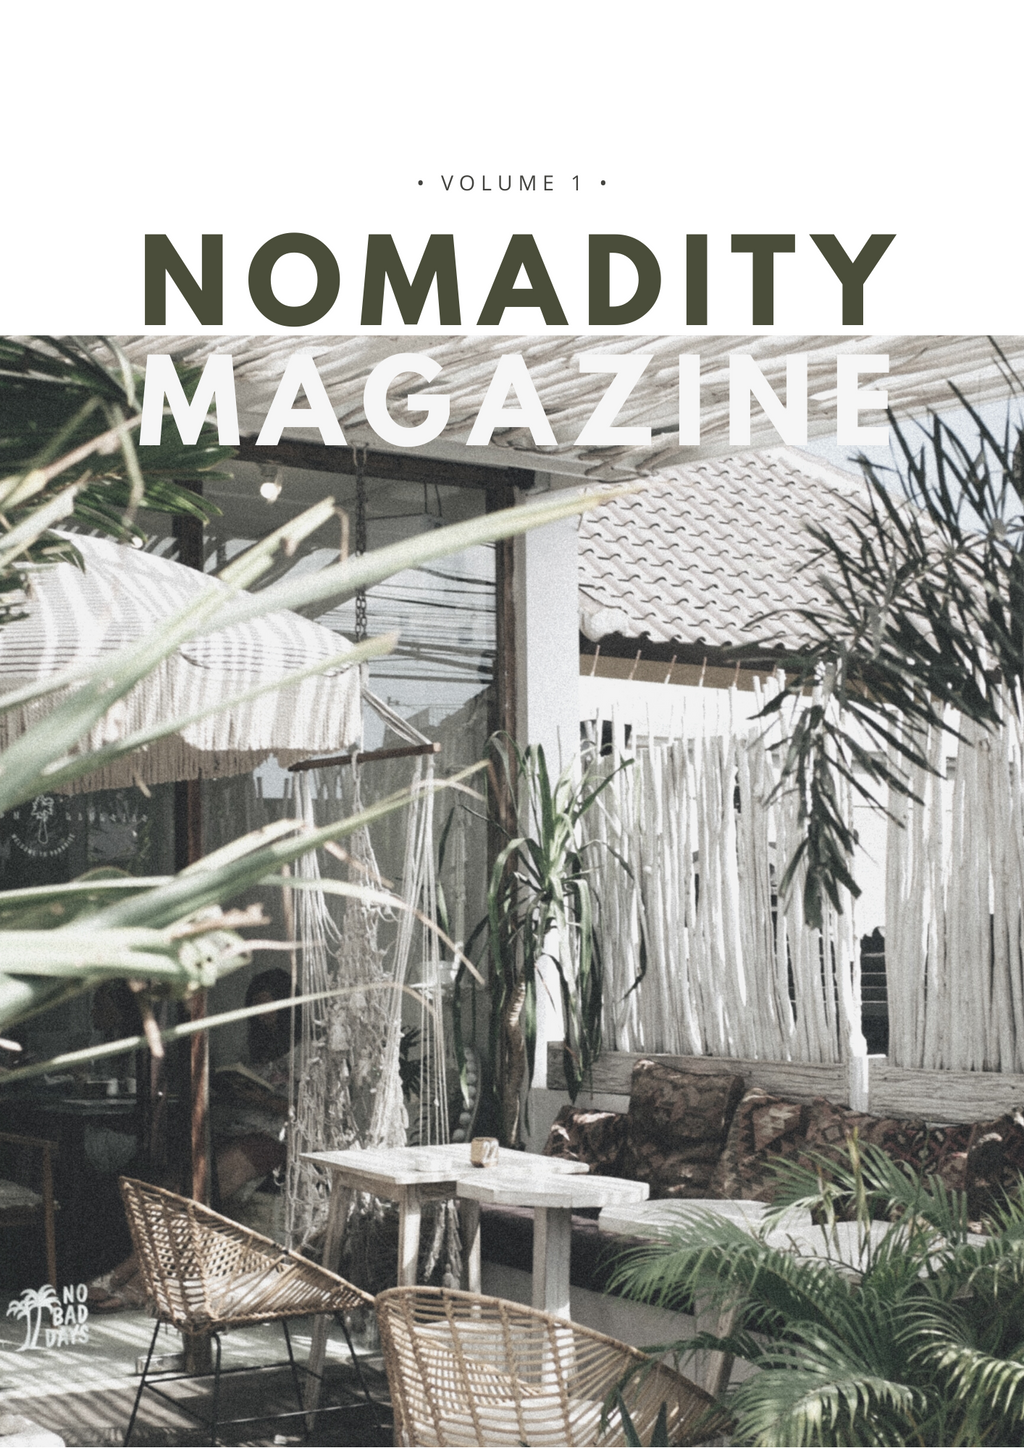 Issue #1 - Nomadity Magazine